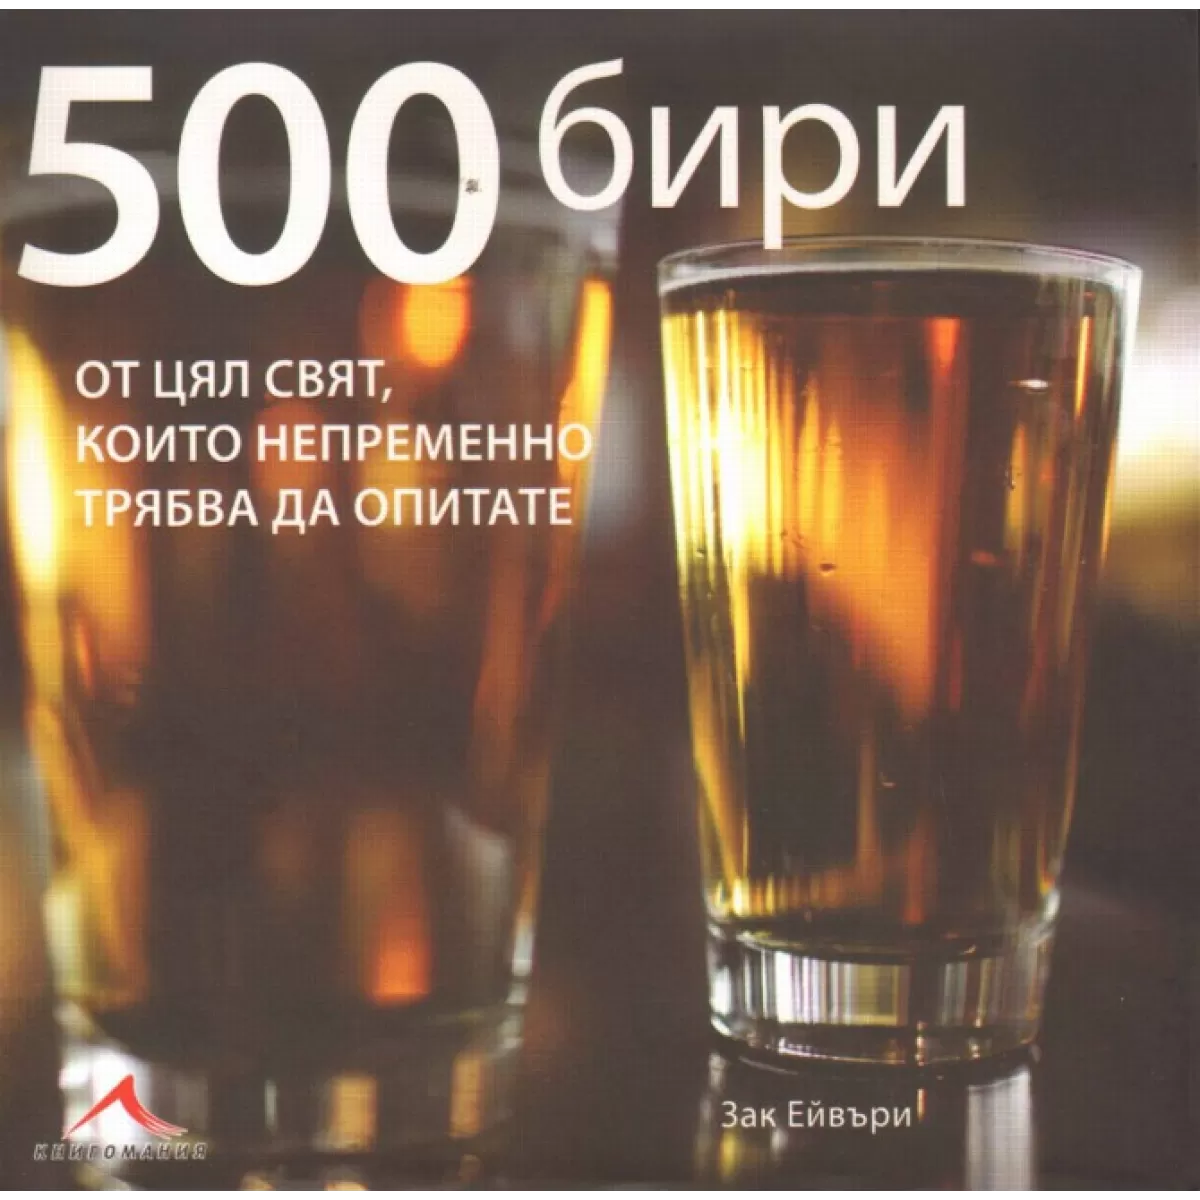 500 бири от цял свят, които непременно трябва да опитате.